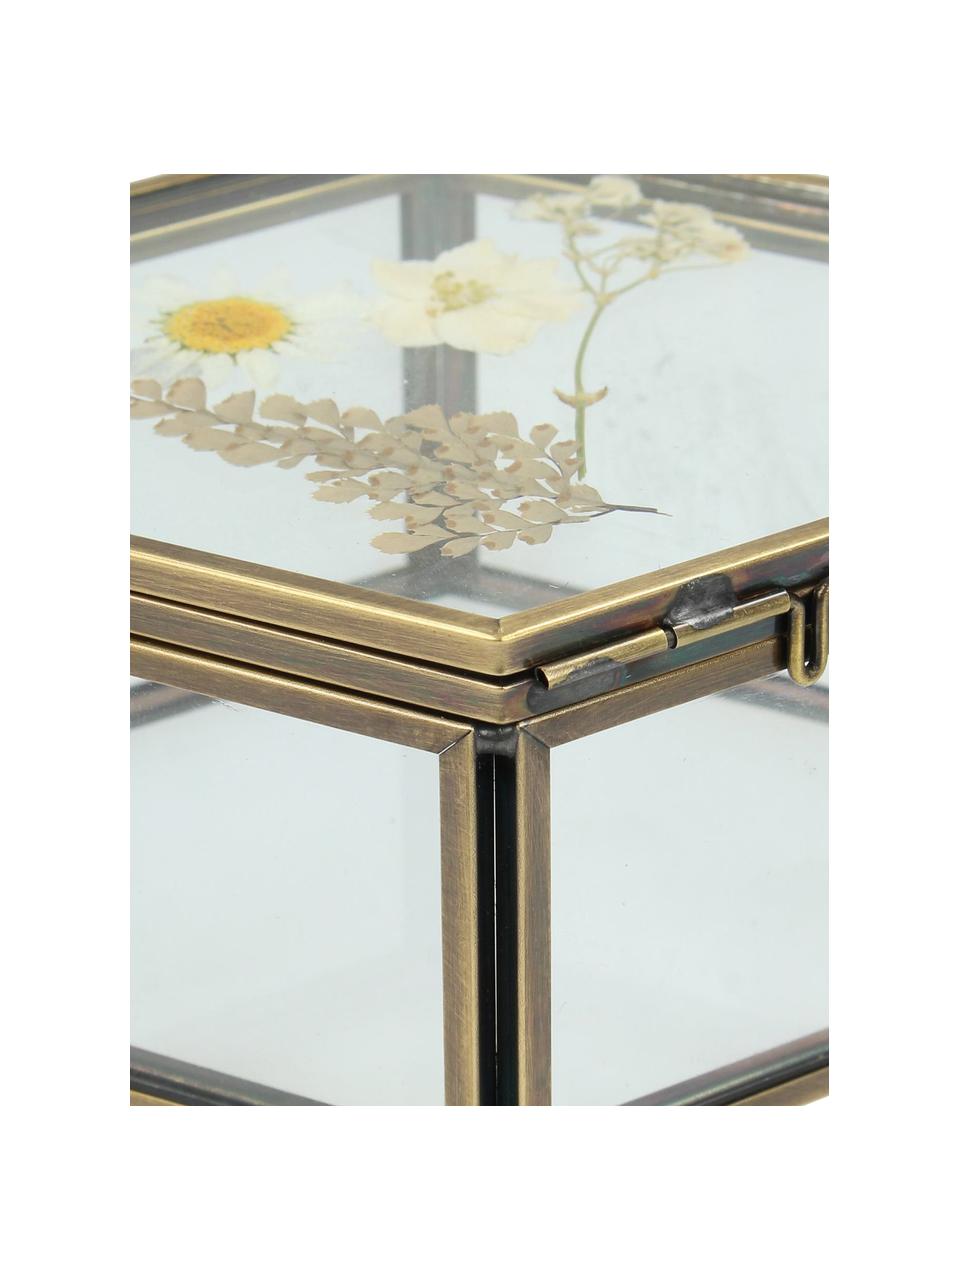 Aufbewahrungsbox Dried Flowers, Rahmen: Metall, beschichtet, Gold, Transparent, B 11 x H 5 cm